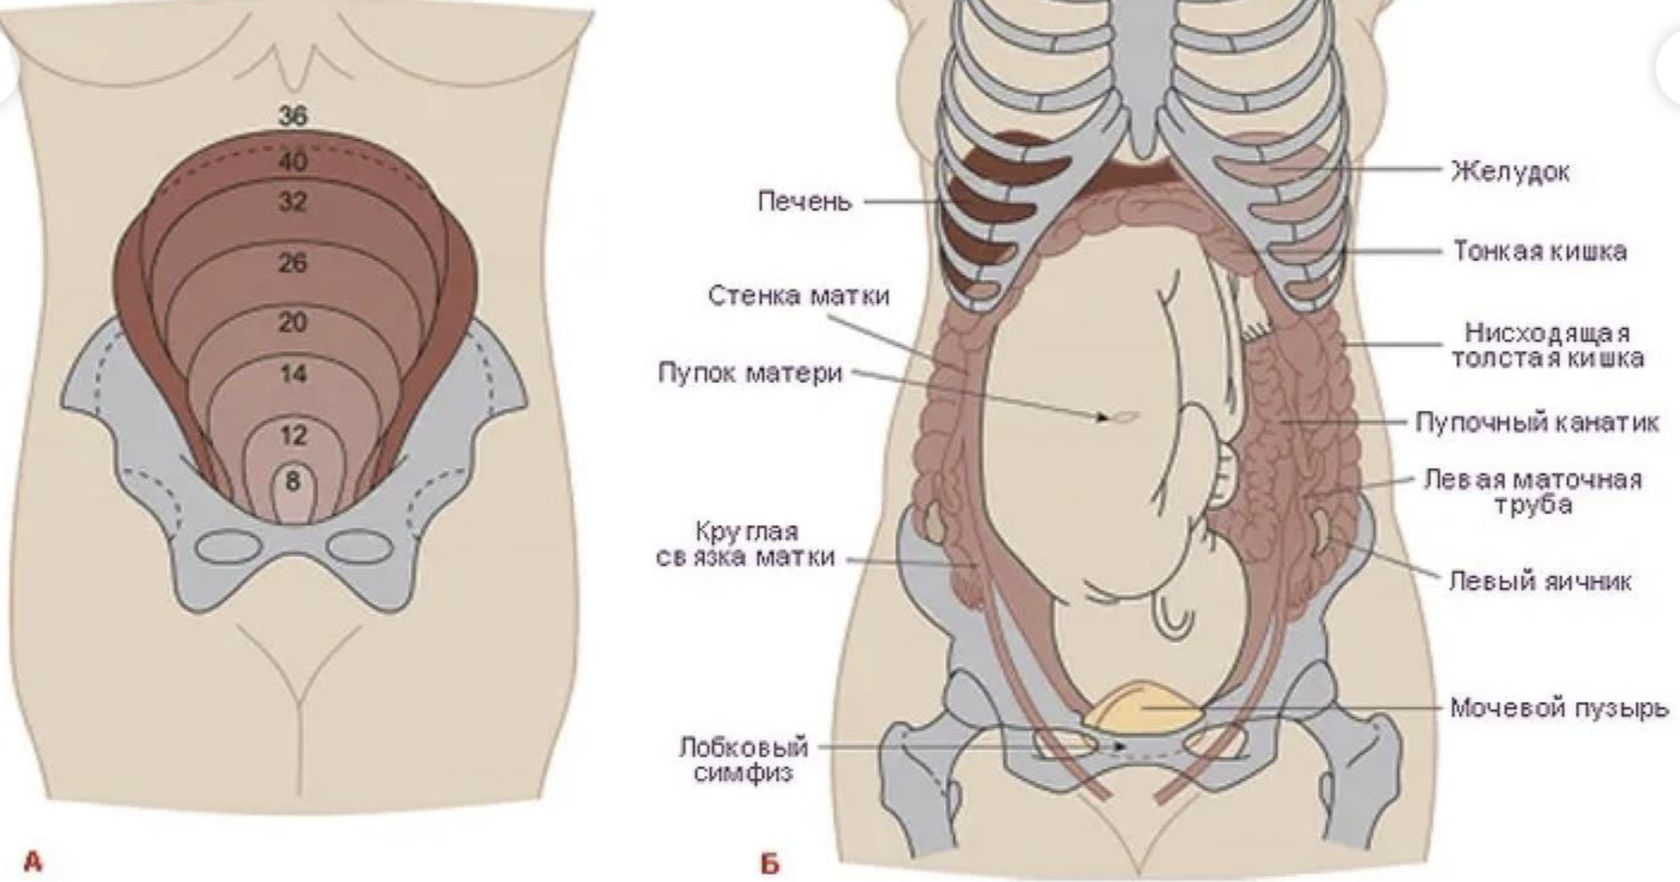 Изменение матки при беременности. Расположение органов у беременной. Анатомия беременной женщины внутренние органы. Строение органов при беременности. Строение внутренних органов беременной.